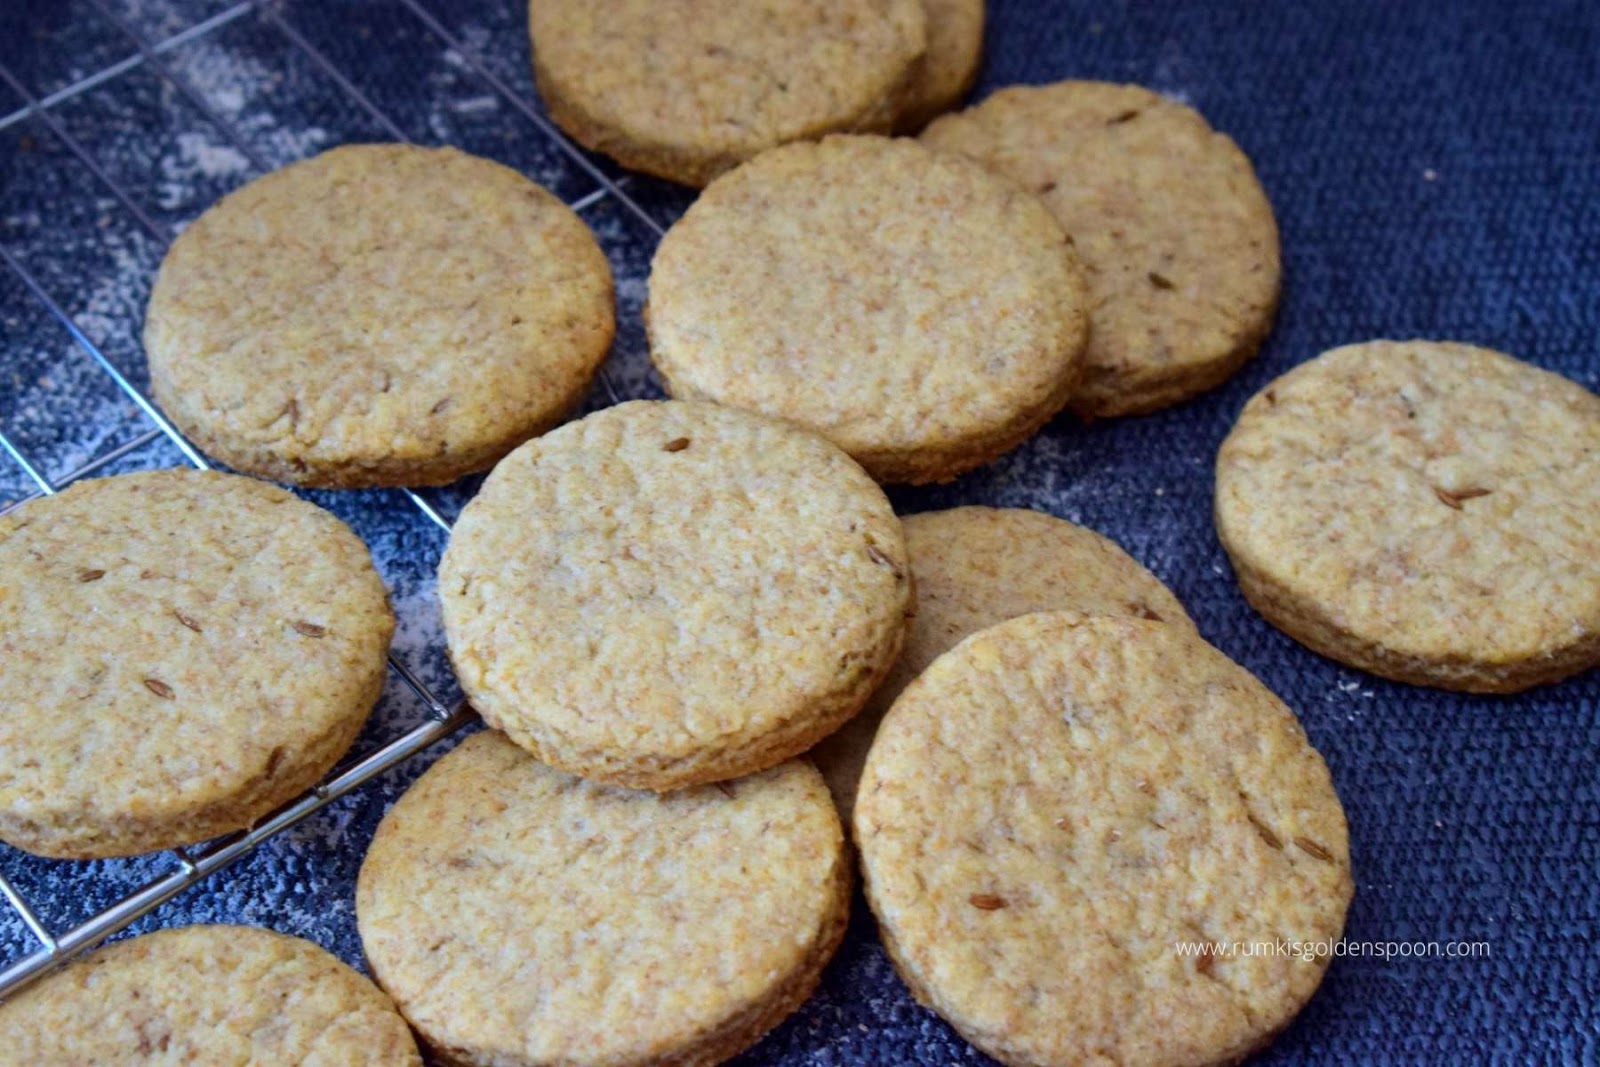 Jeera Biscuits Recipe Jeera Cookies Recipe For Jeera Biscuits Rumki S Golden Spoon